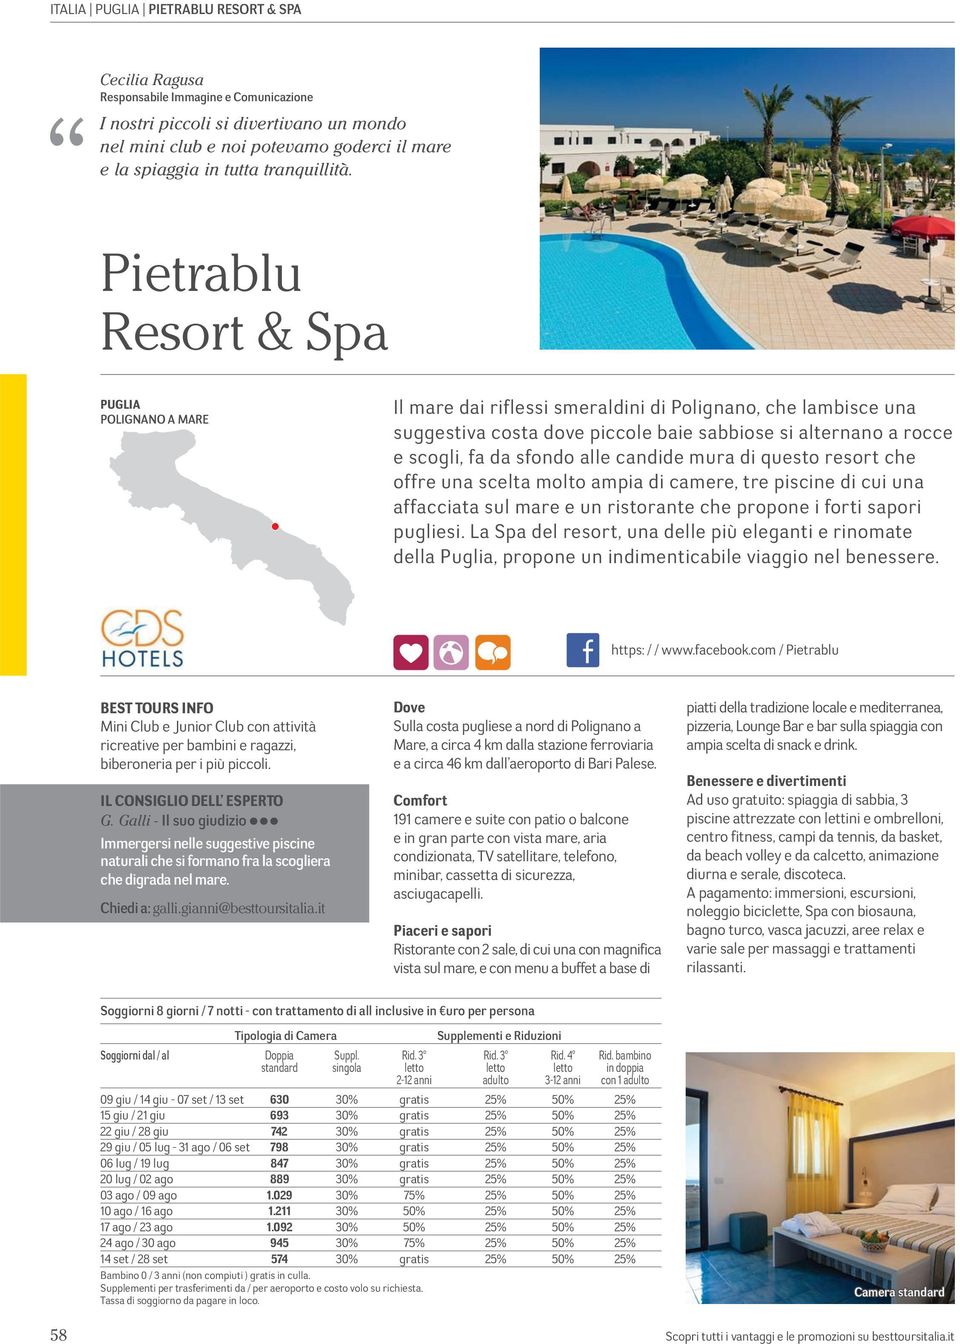 Pietrablu Resort & Spa POLIGNANO A MARE Il mare dai riflessi smeraldini di Polignano, che lambisce una suggestiva costa dove piccole baie sabbiose si alternano a rocce e scogli, fa da sfondo alle